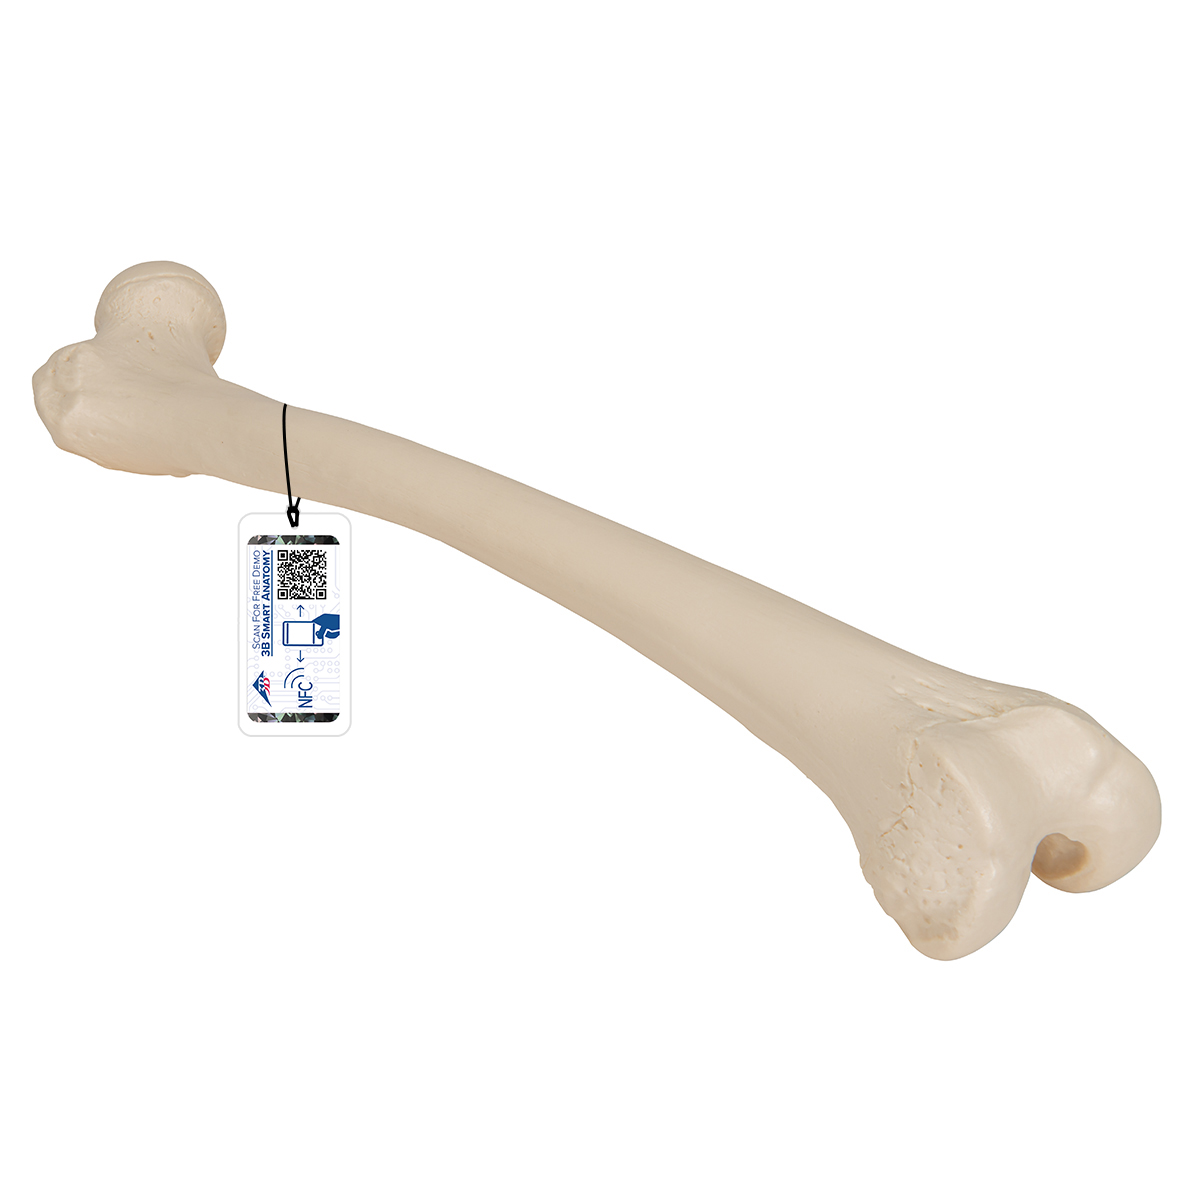 Oberschenkelknochen Modell - 3B Smart Anatomy, Bestellnummer 1019360, A35/1, 3B Scientific